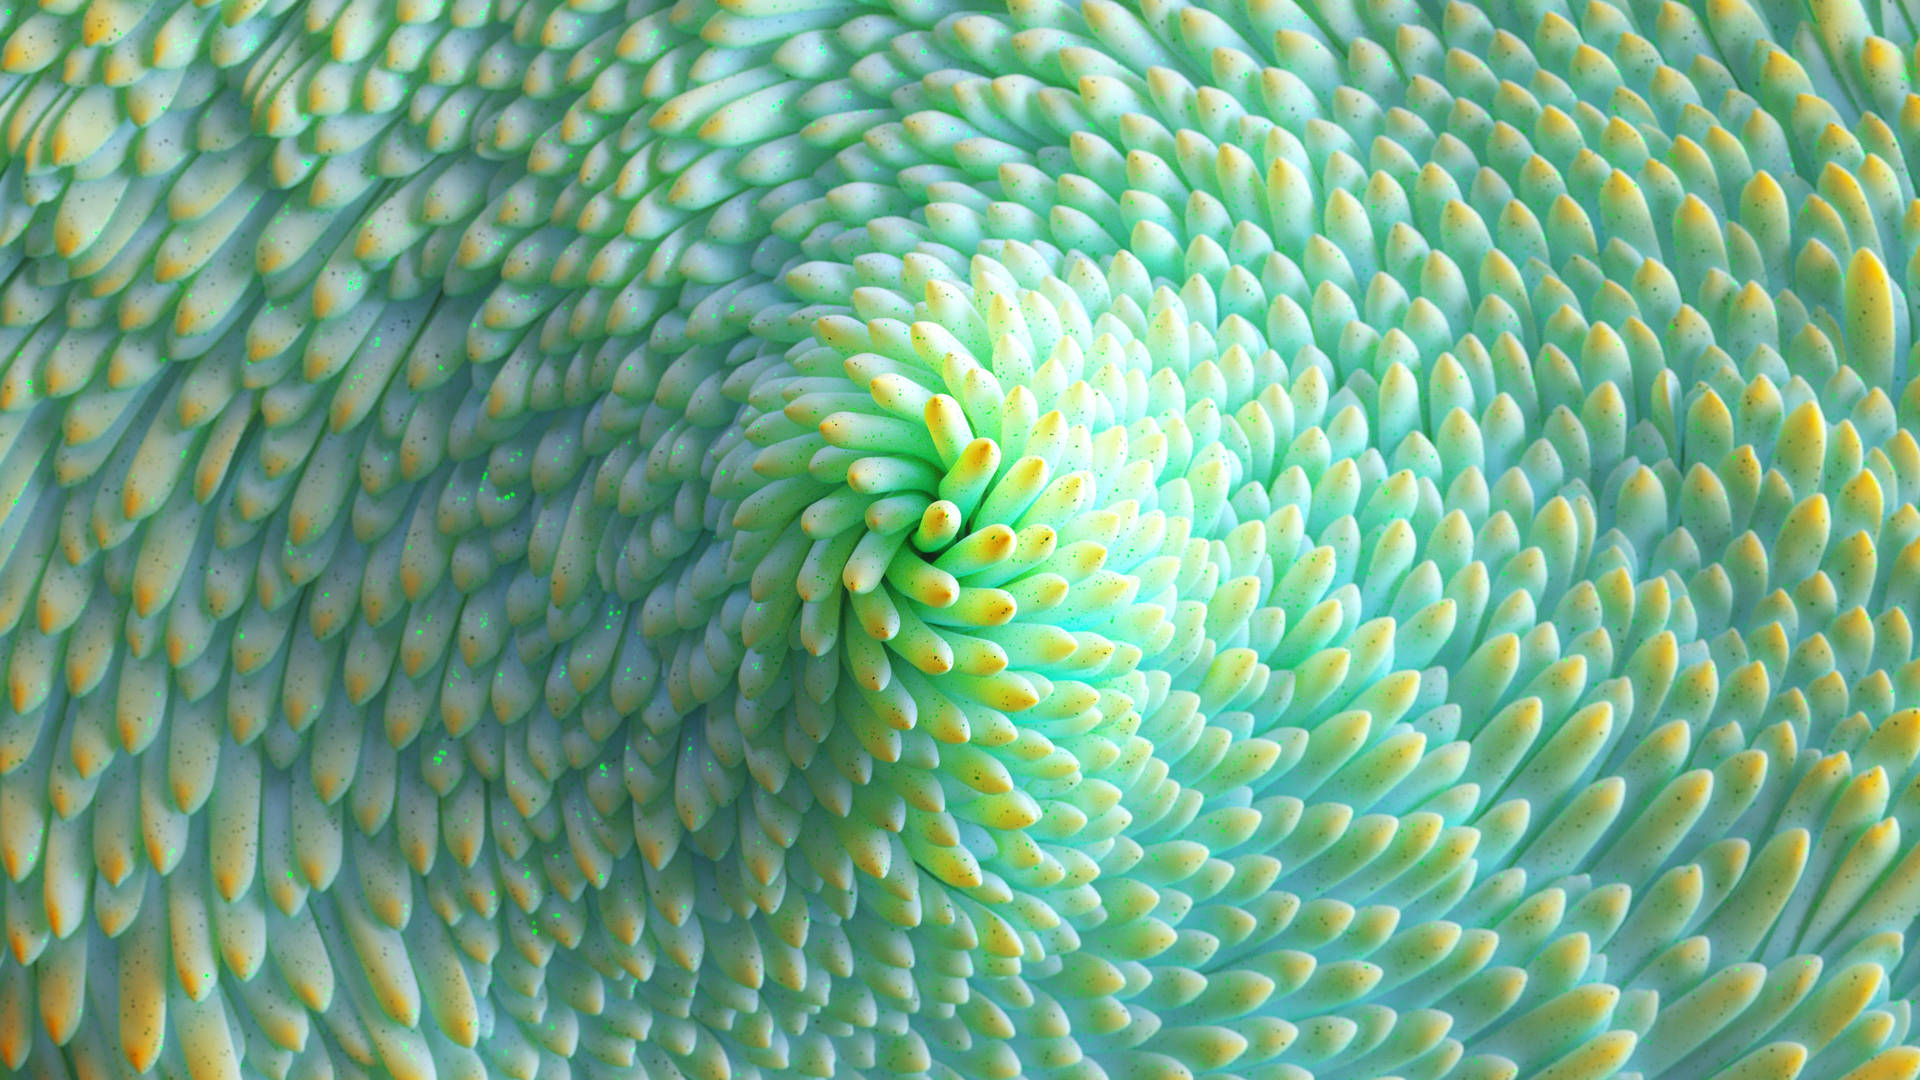 4d Ultra Hd Close-up Of Green Succulent